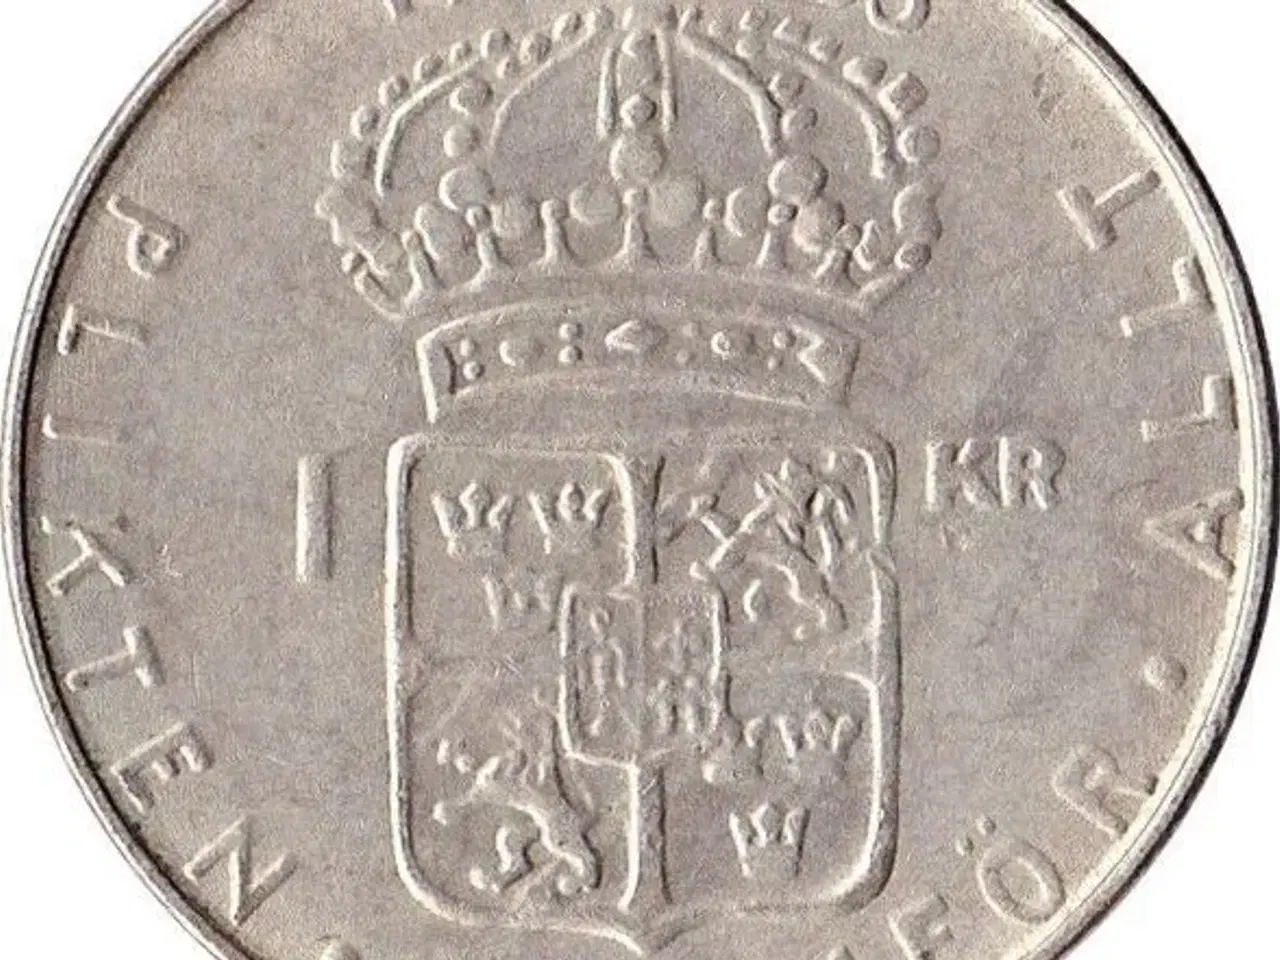 Billede 5 - Svenske 1 krona mønter fra 1952-1973